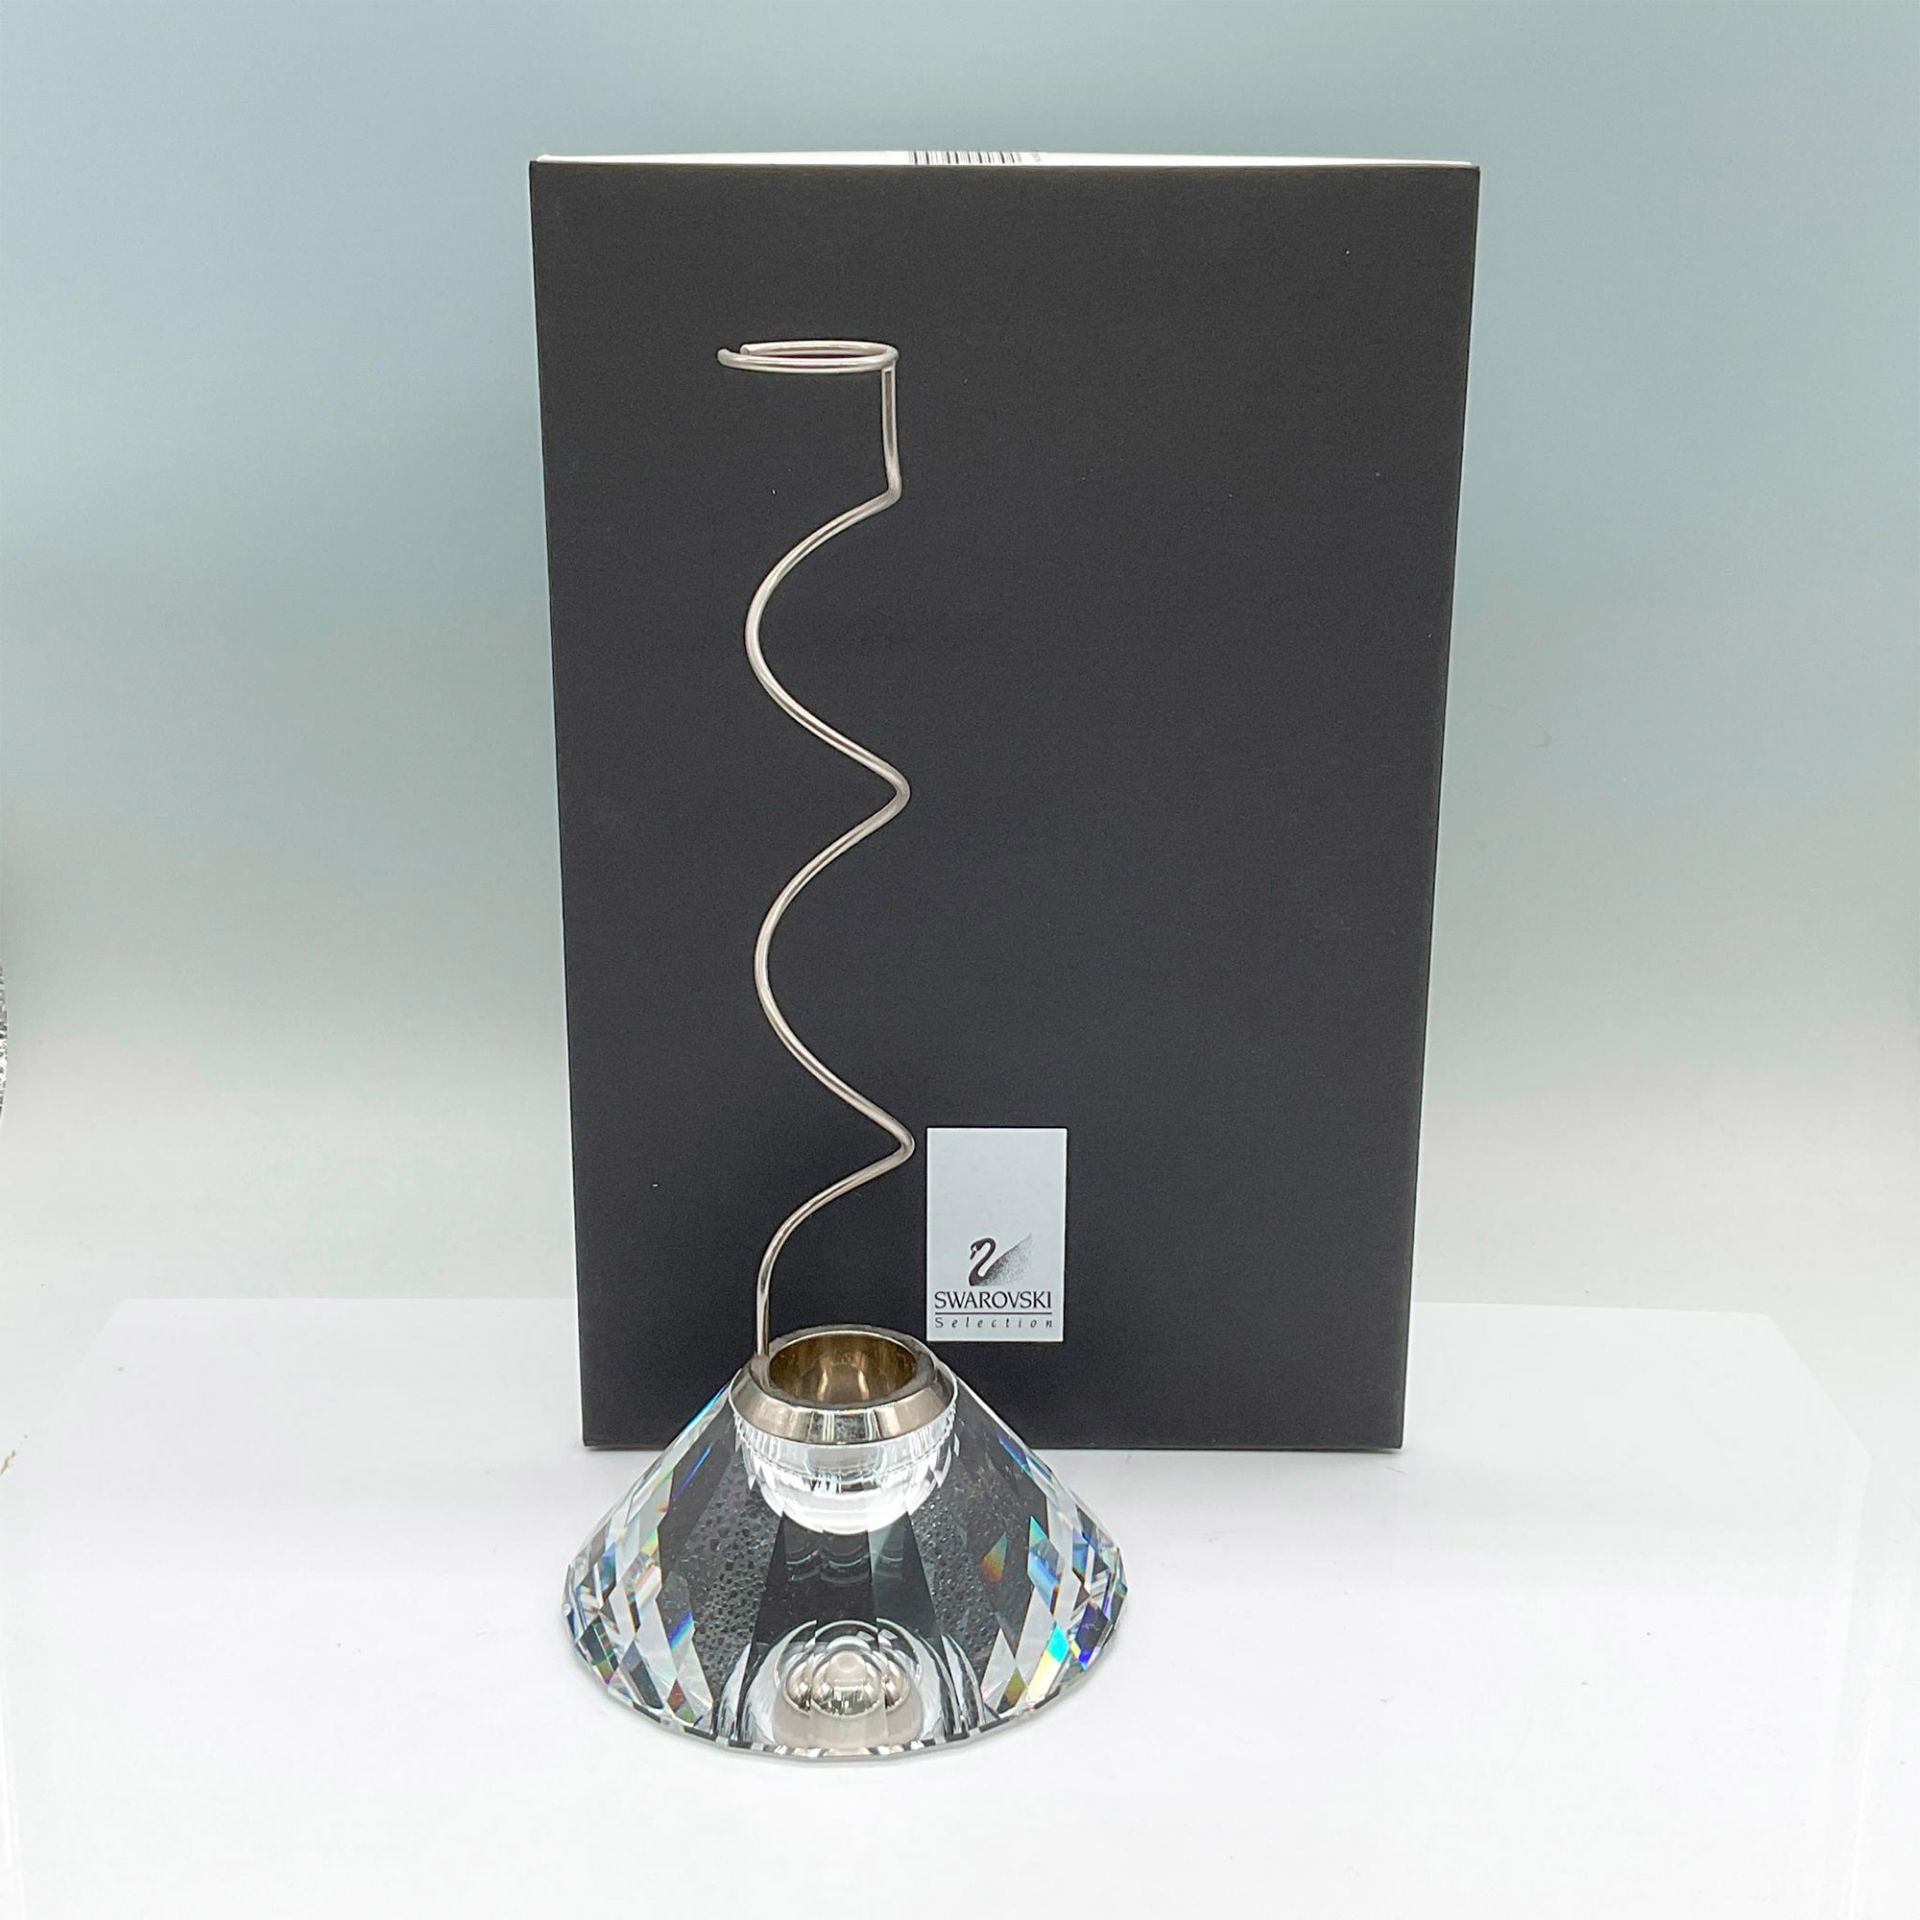 Swarovski Selection Crystal Single Flower Vase, Medea - Image 2 of 4